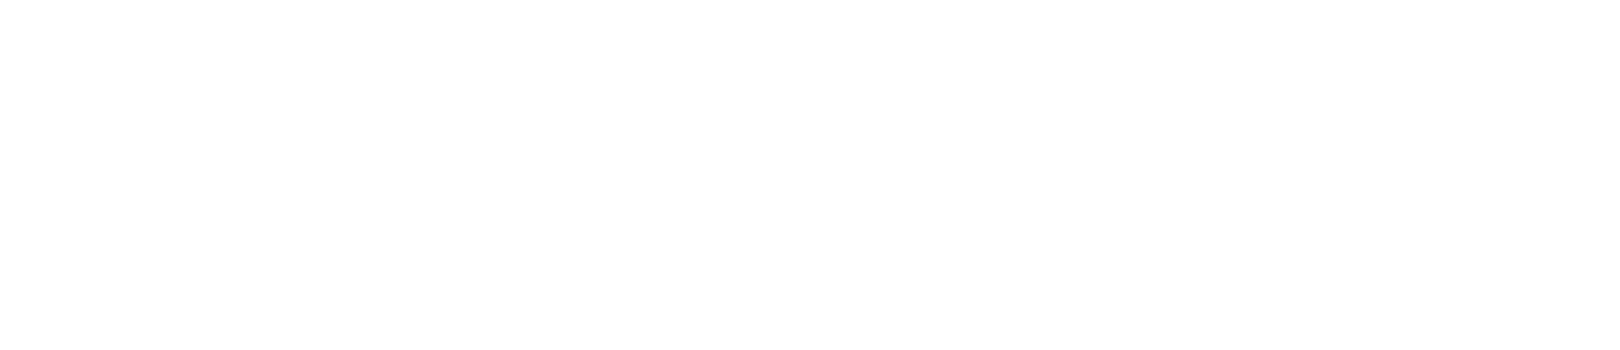 logo Arsenic2 asbl